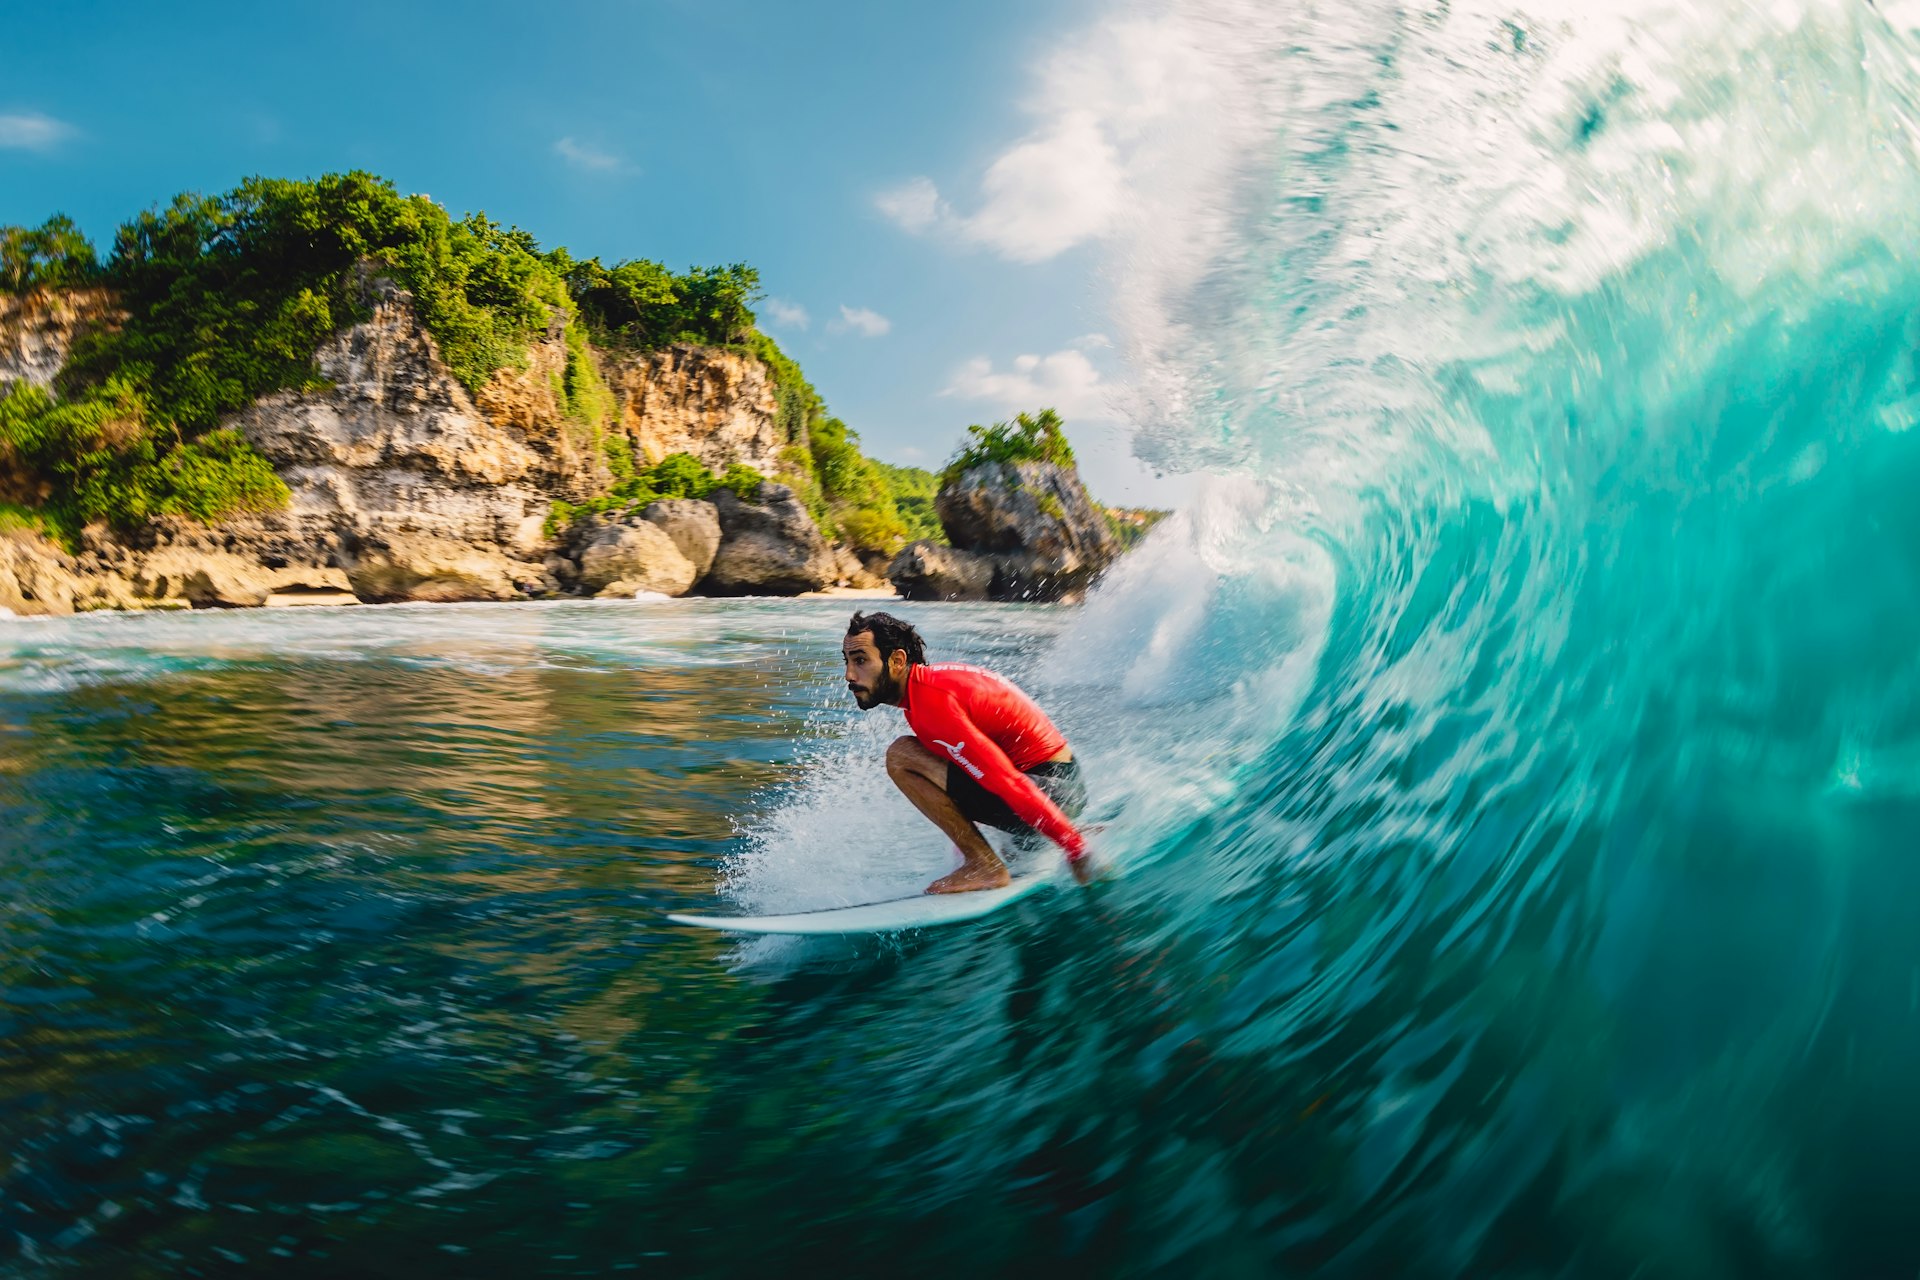 A surfer riding a barrel wave off Bali